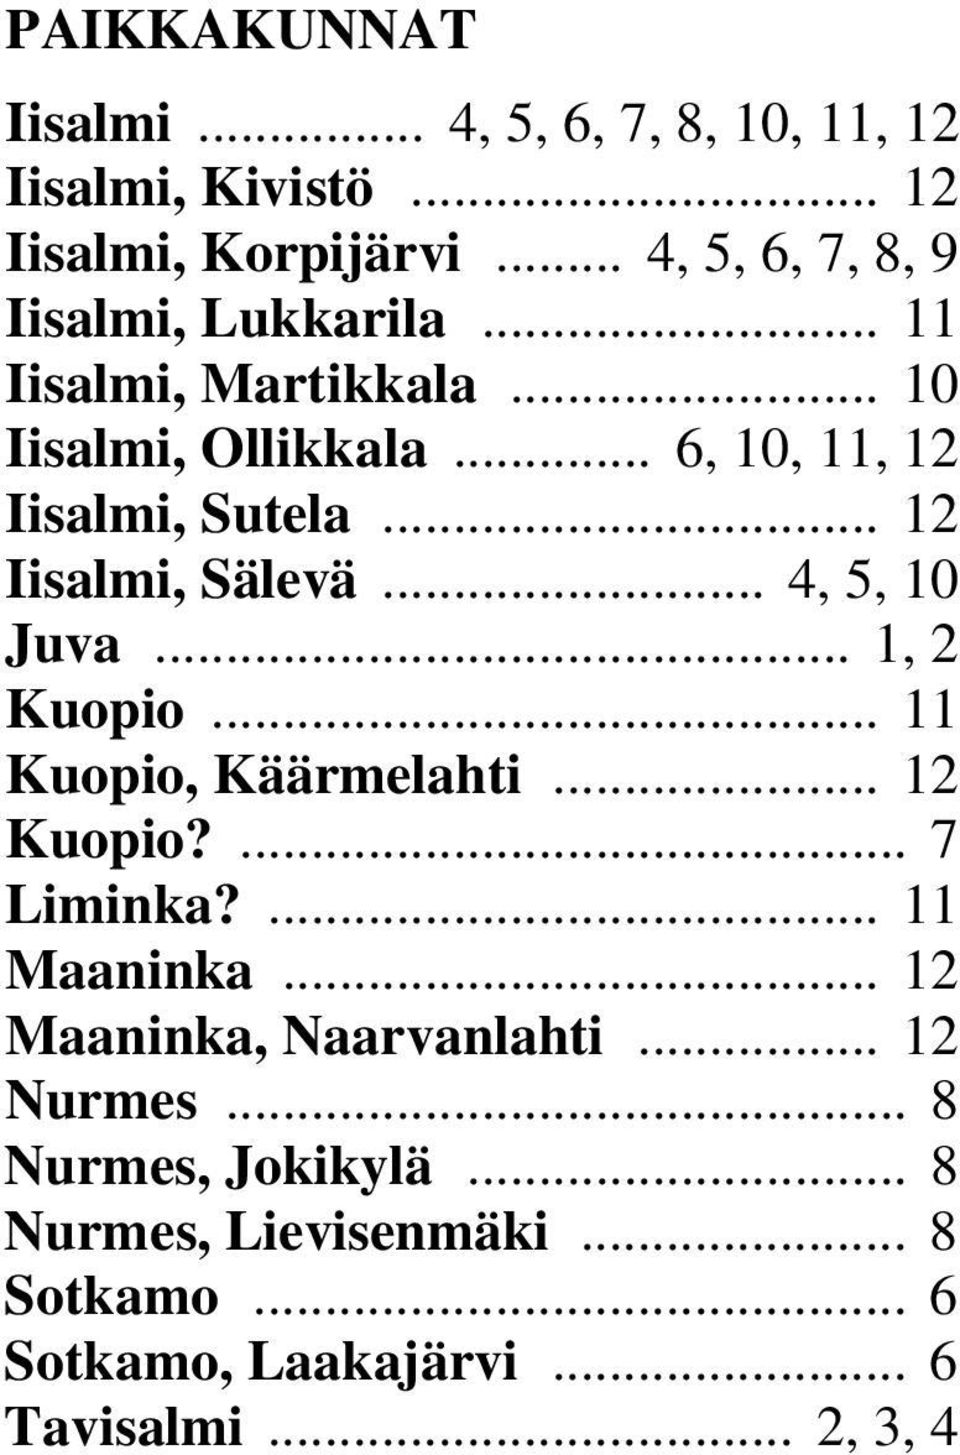 .. 12 Iisalmi, Sälevä... 4, 5, 10 Juva... 1, 2 Kuopio... 11 Kuopio, Käärmelahti... 12 Kuopio?... 7 Liminka?... 11 Maaninka.